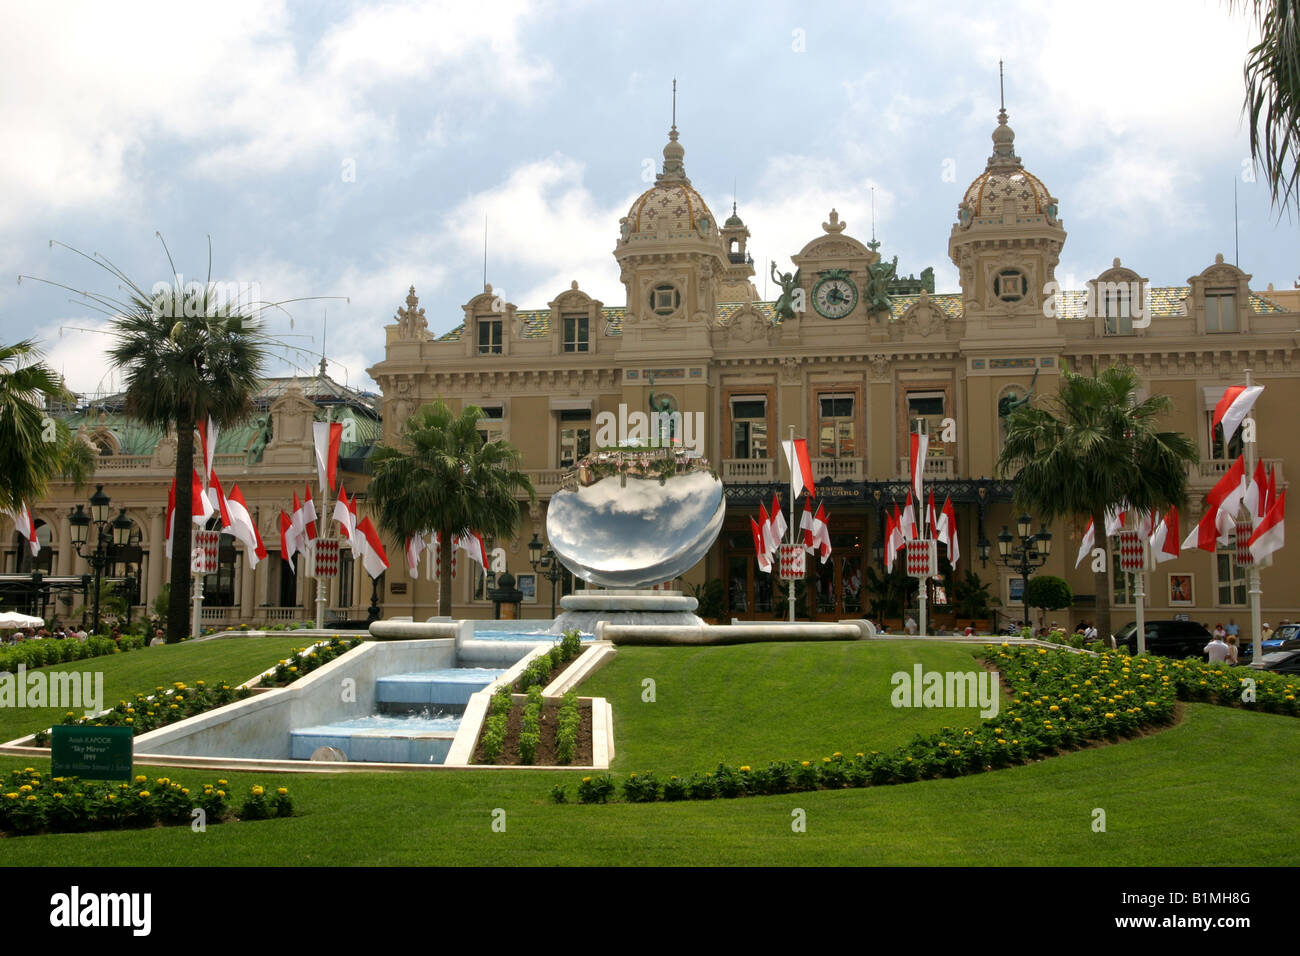 Das Casino MONACO in Monte Carlo eröffnet im Jahre 1878. Ein riesiger Spiegel steht in den Gärten vor flankiert von der Monaco-Flagge Stockfoto